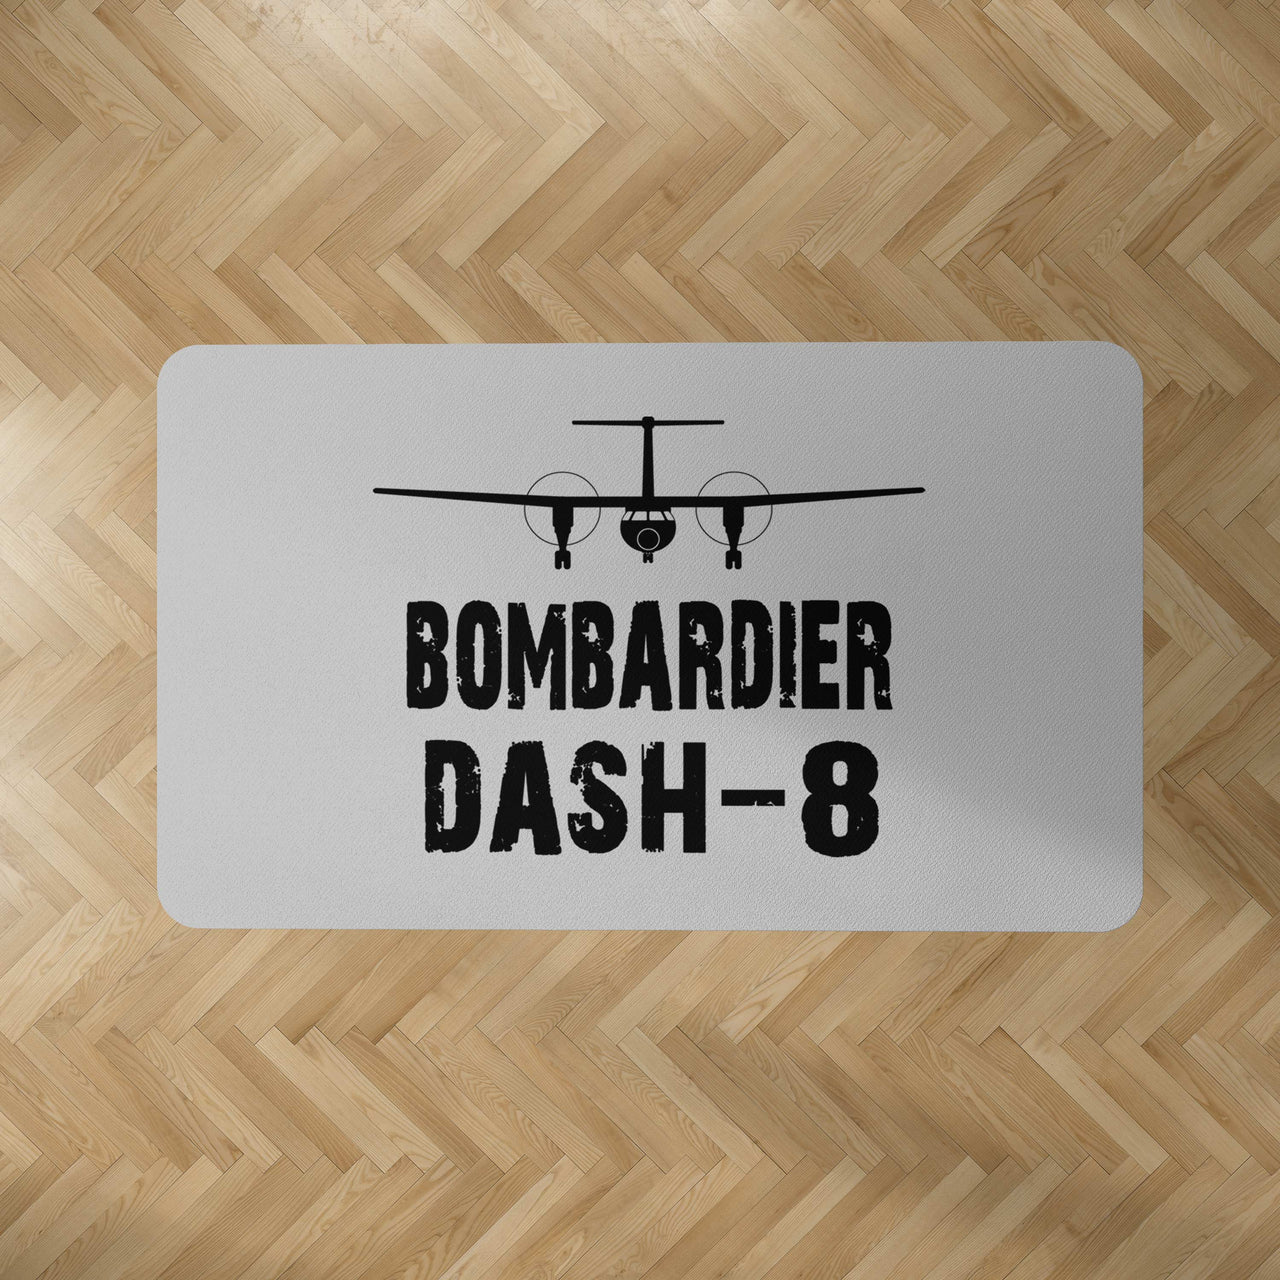 Bombardier Dash-8 & Plane Designed Carpet & Floor Mats